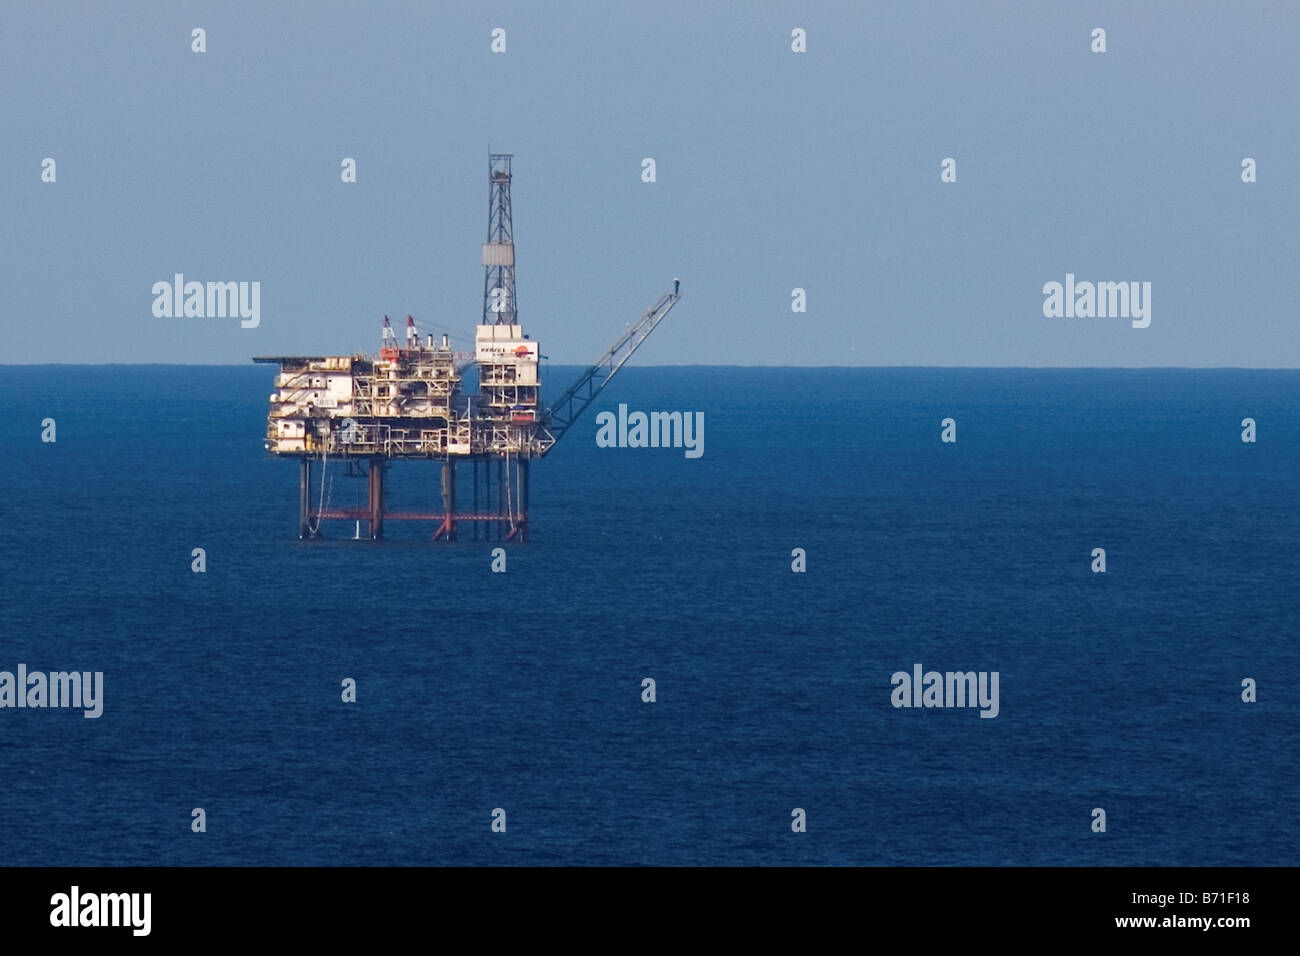 Mare piattaforma di gas nel Golfo di Biscaglia, Spagna, Cantabric sea, energia, benzina Foto Stock